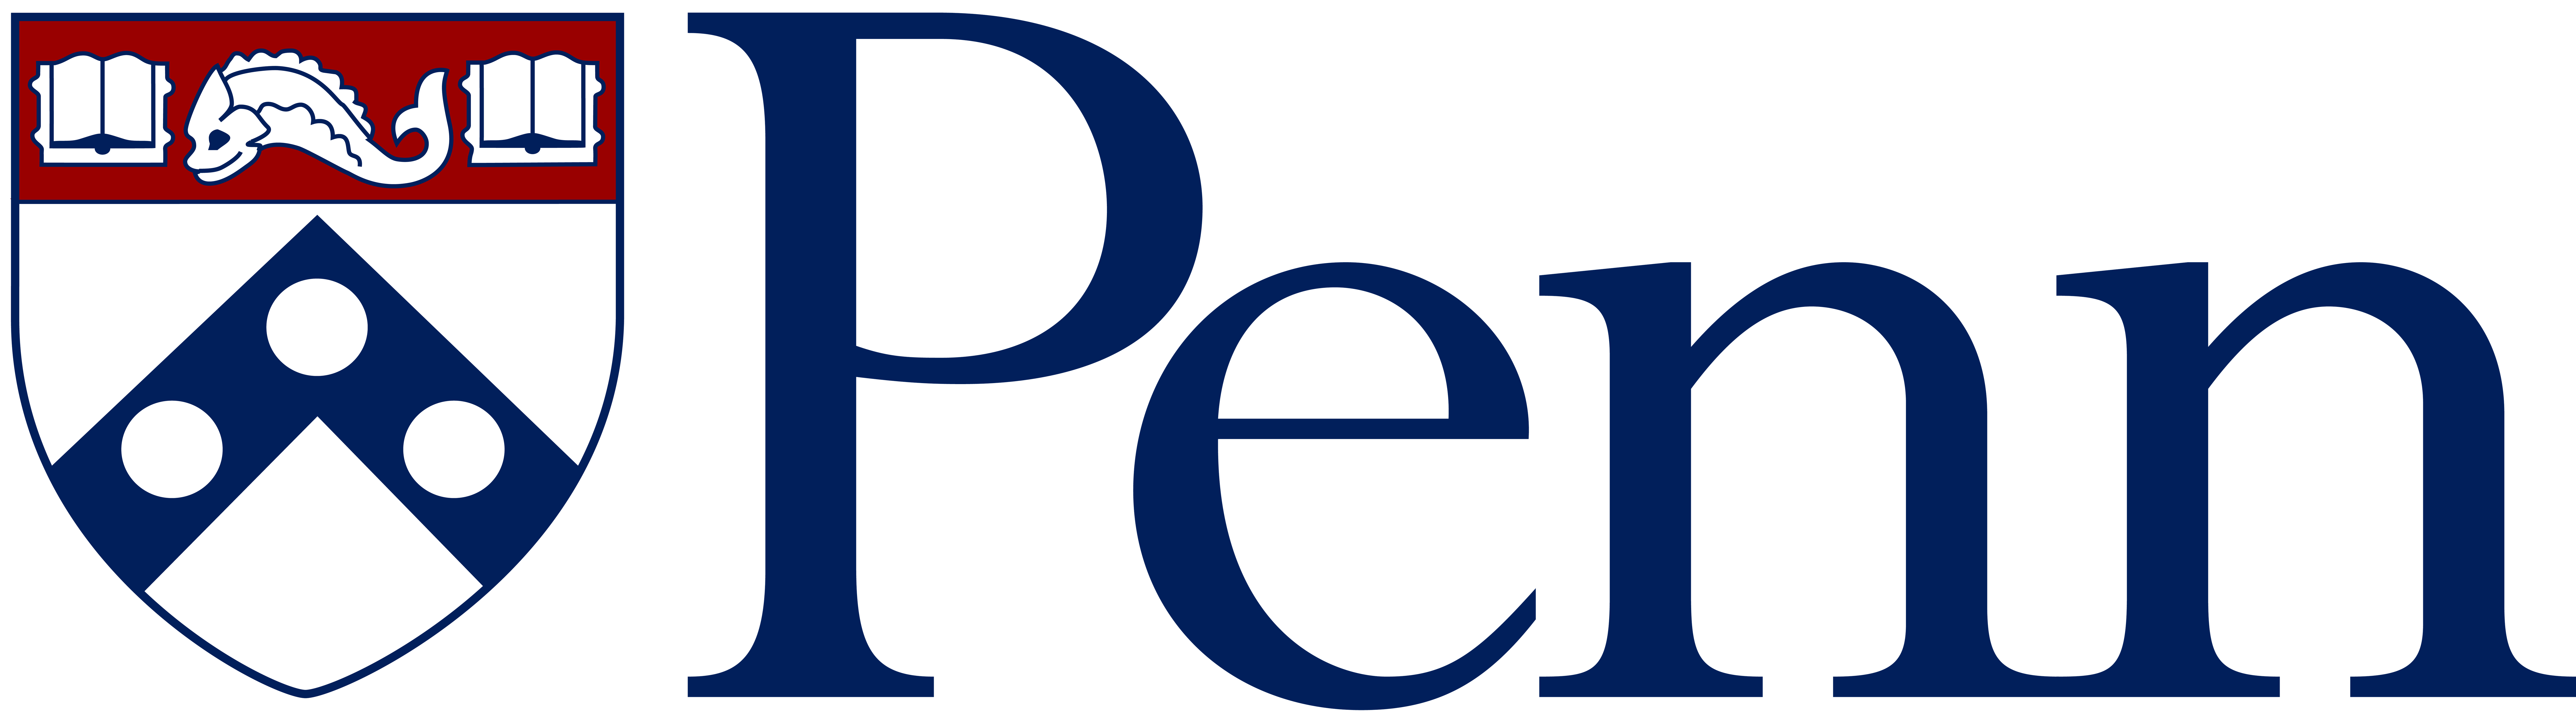 Penn Logo - About Me